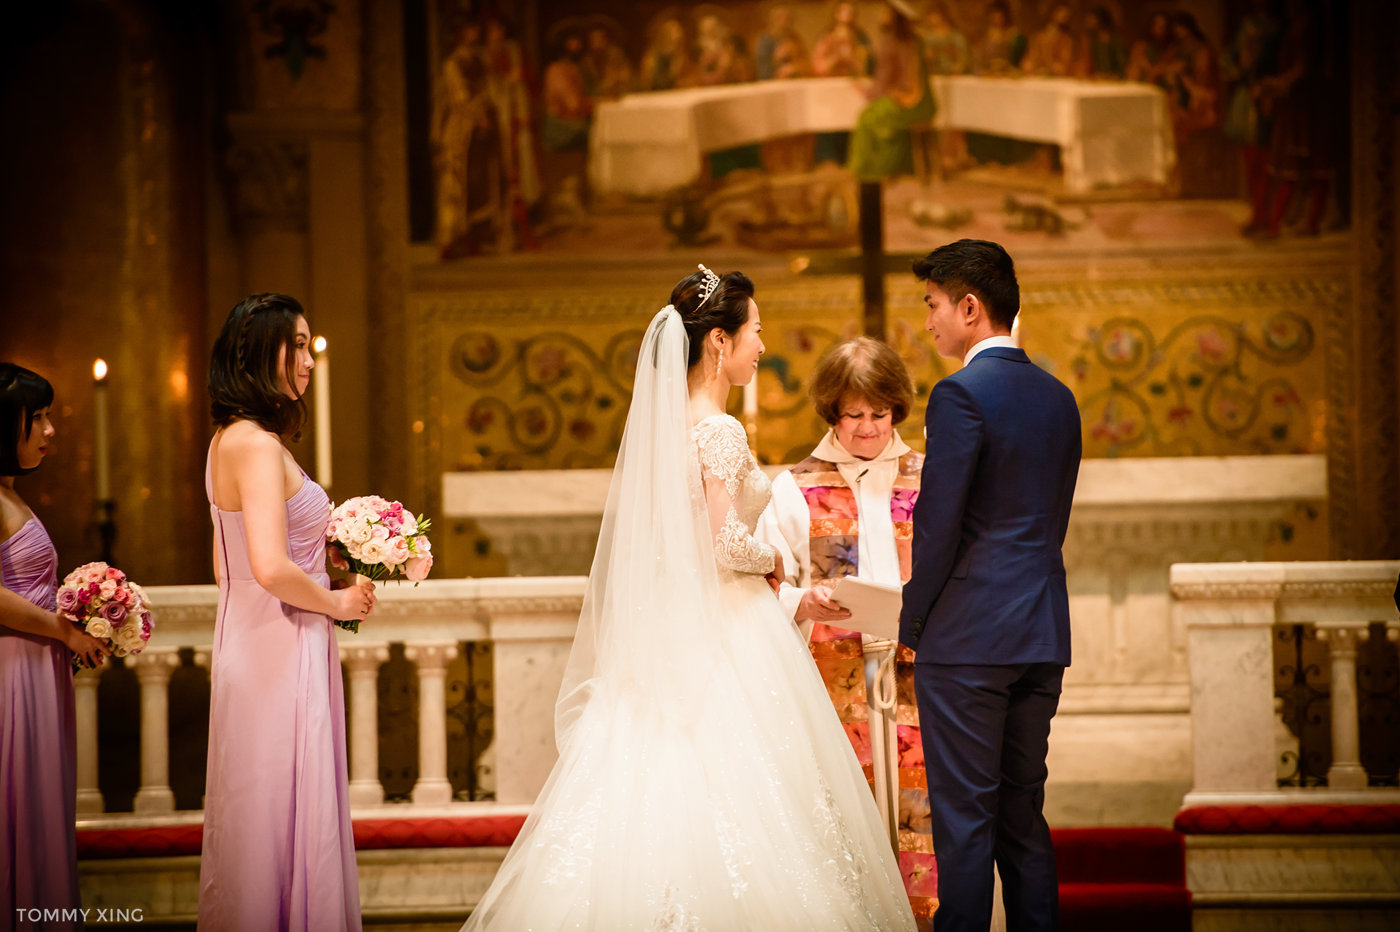 stanford memorial church wedding 旧金山湾区斯坦福教堂婚礼 Tommy Xing Photography 068.jpg